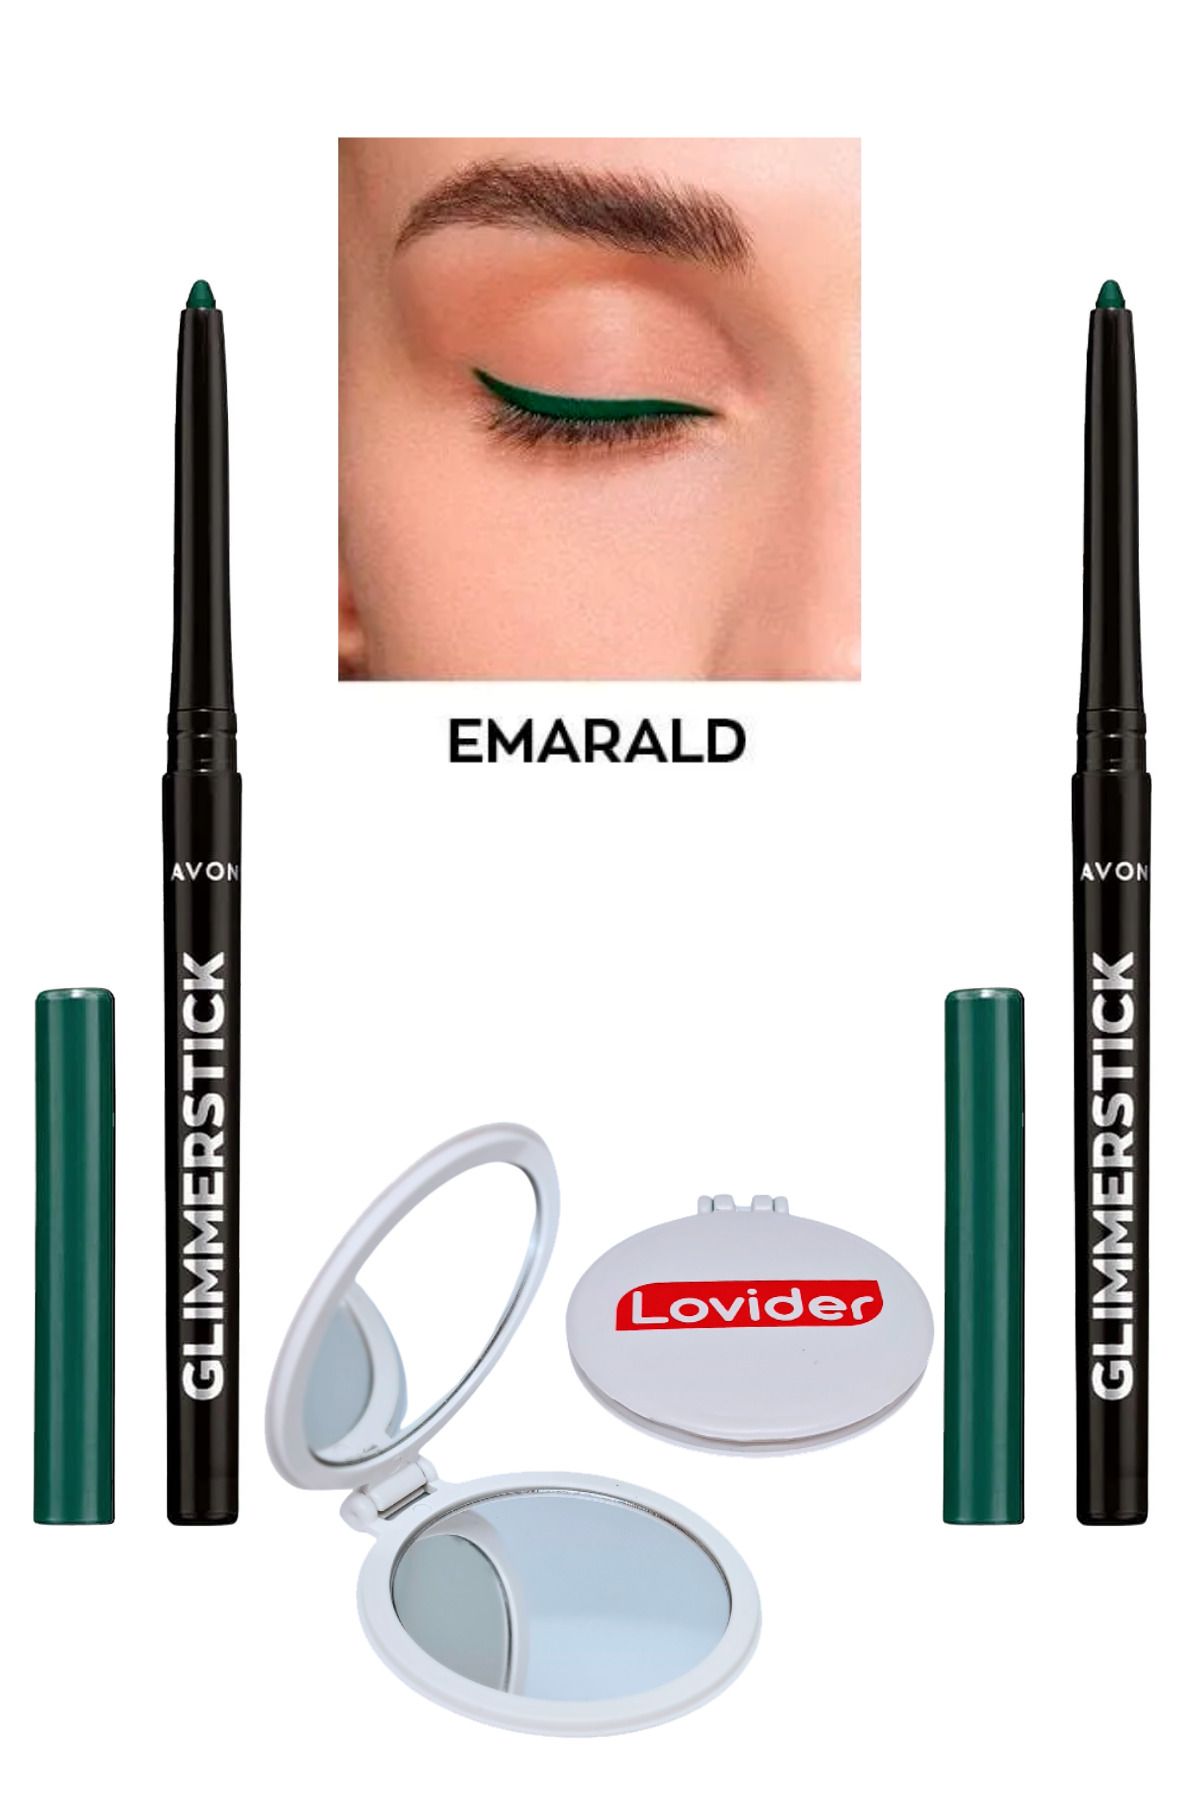 Avon Glimmersticks Asansörlü Göz Kalemi Emerald 2'li + Lovider Cep Aynası Hediye